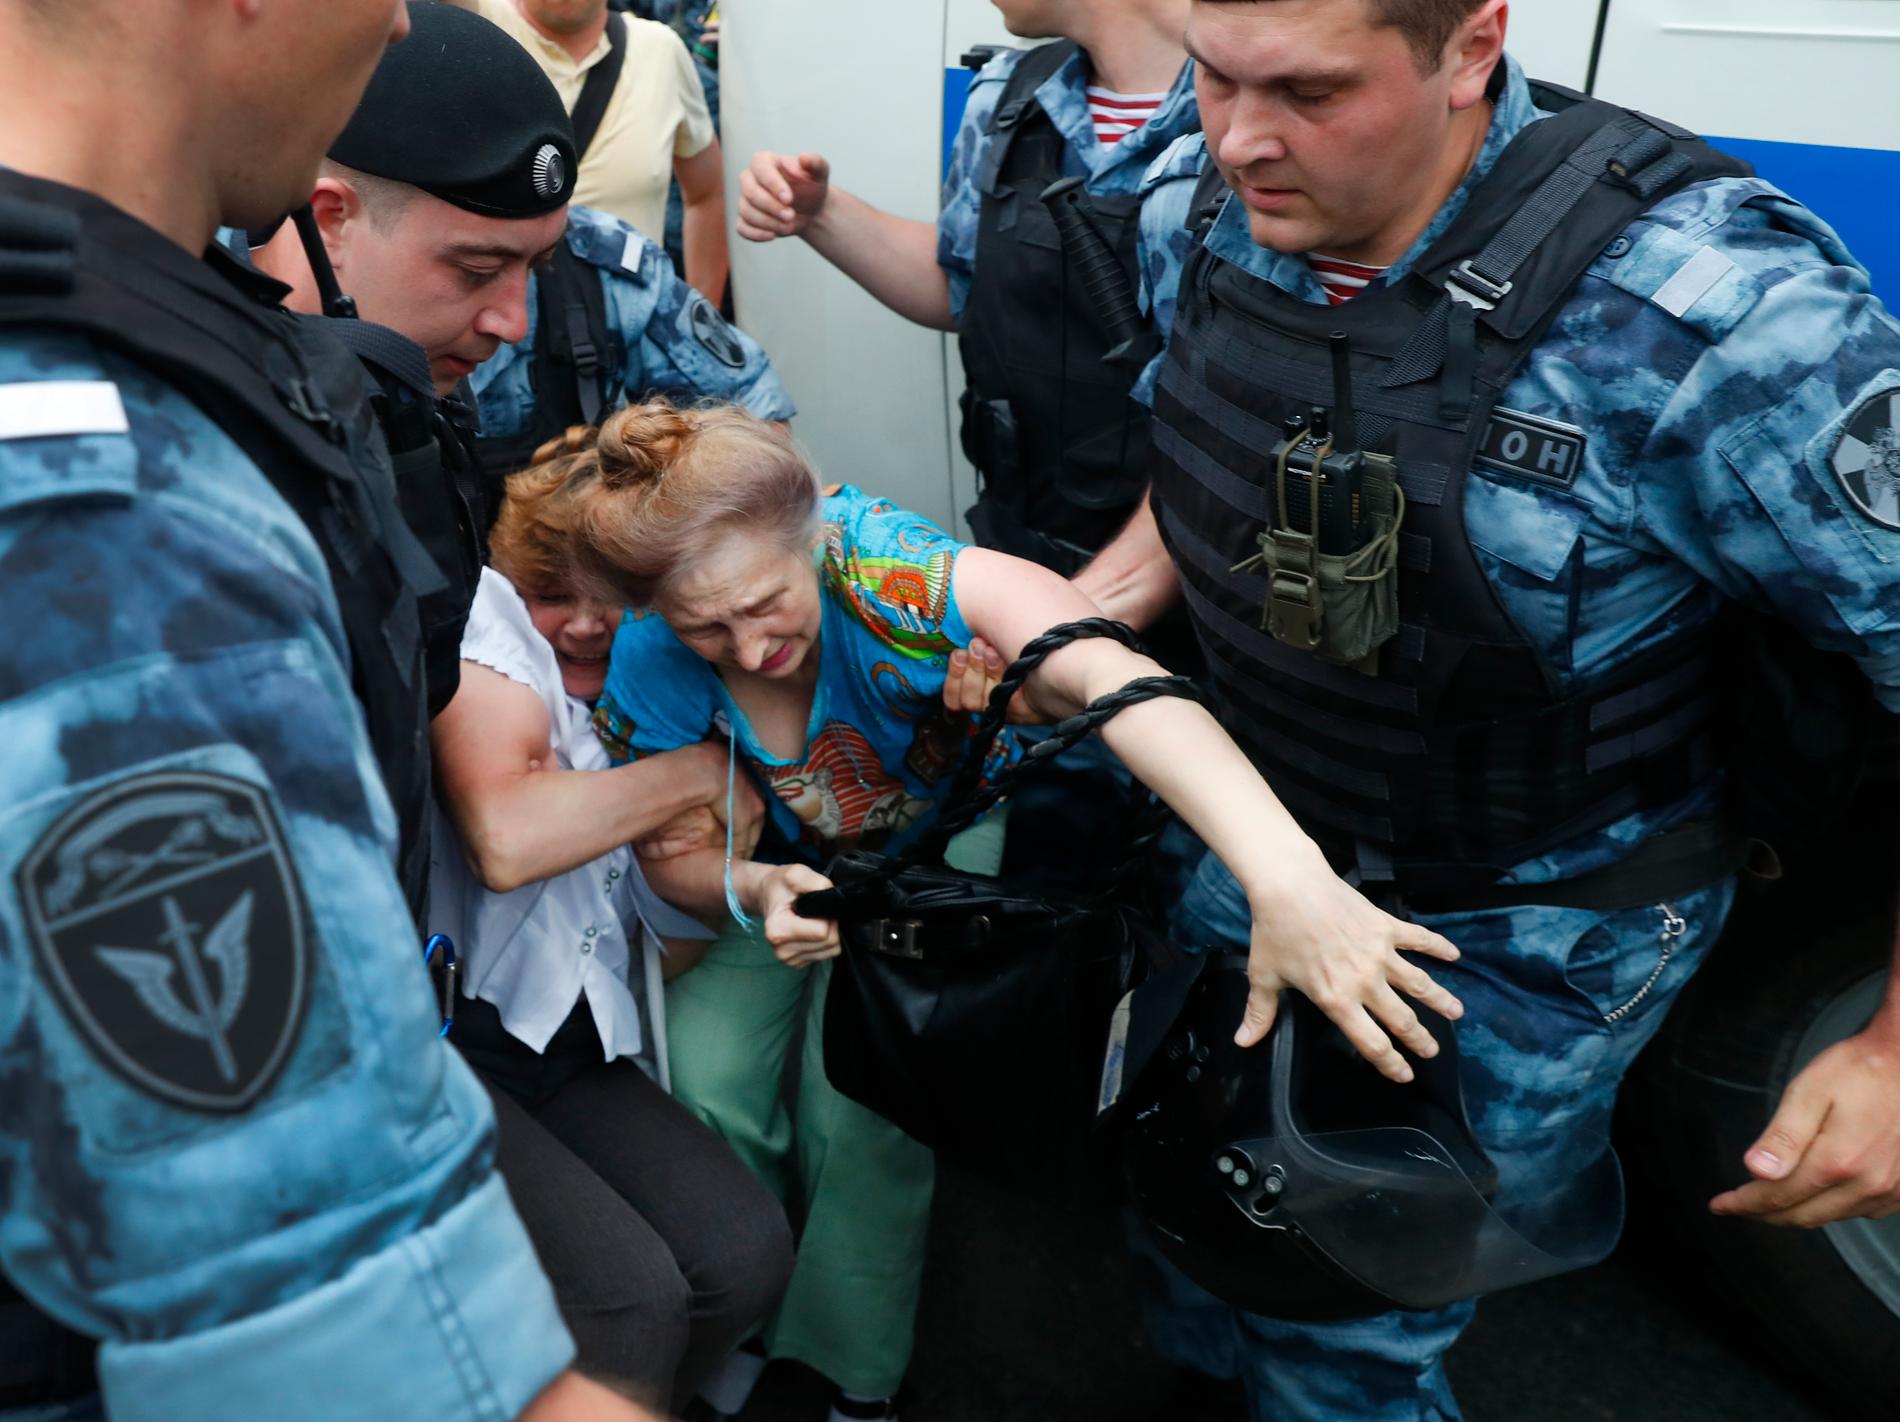 Polis griper en kvinna under protestmarschen i Moskva, där bland annat den ryske oppositionspolitikern Aleksej Navalnyj har gripits.